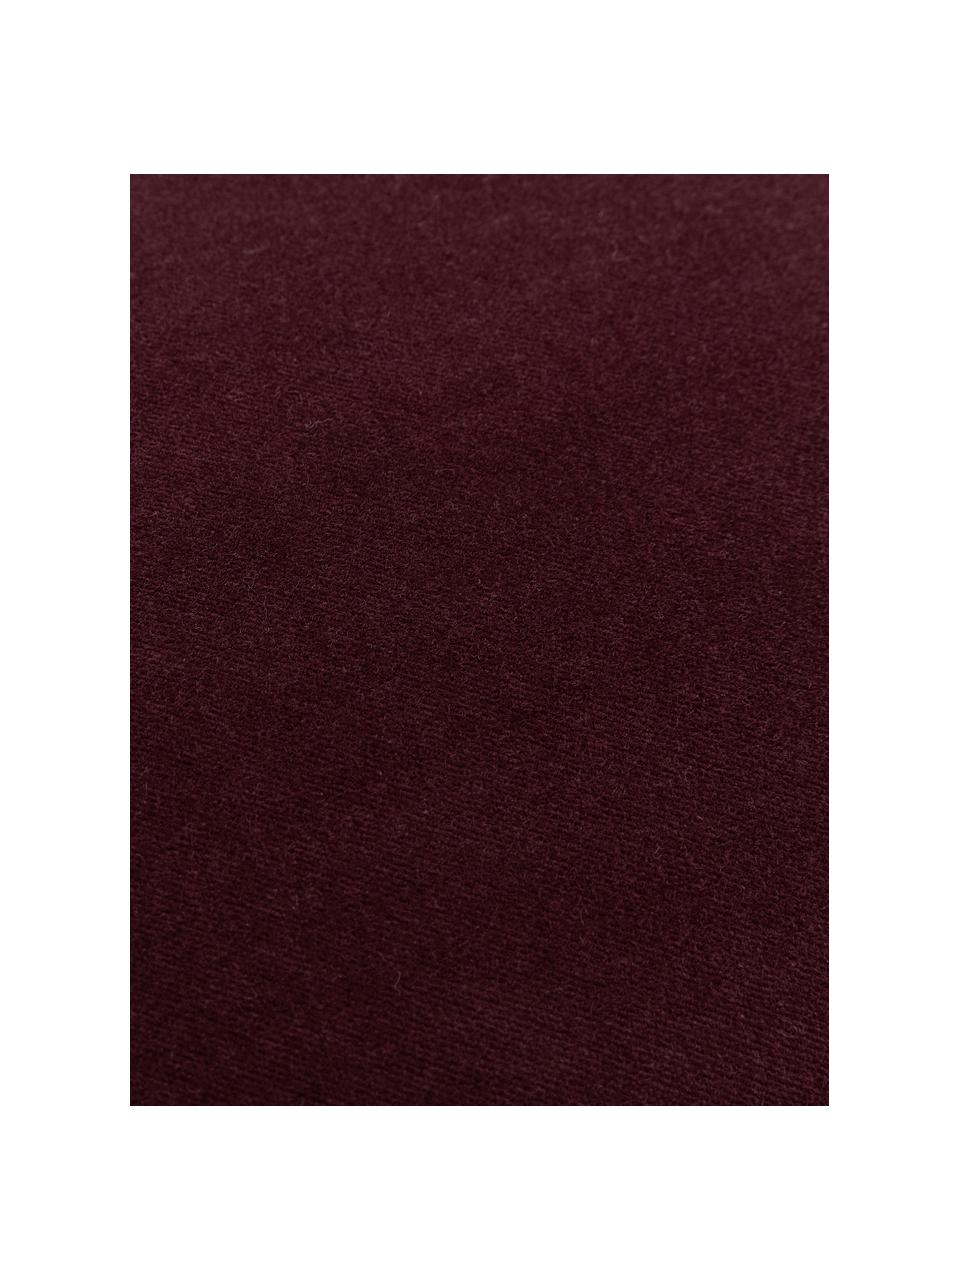 Einfarbige Samt-Kissenhülle Dana in Burgund, 100% Baumwollsamt, Burgund, B 30 x L 50 cm